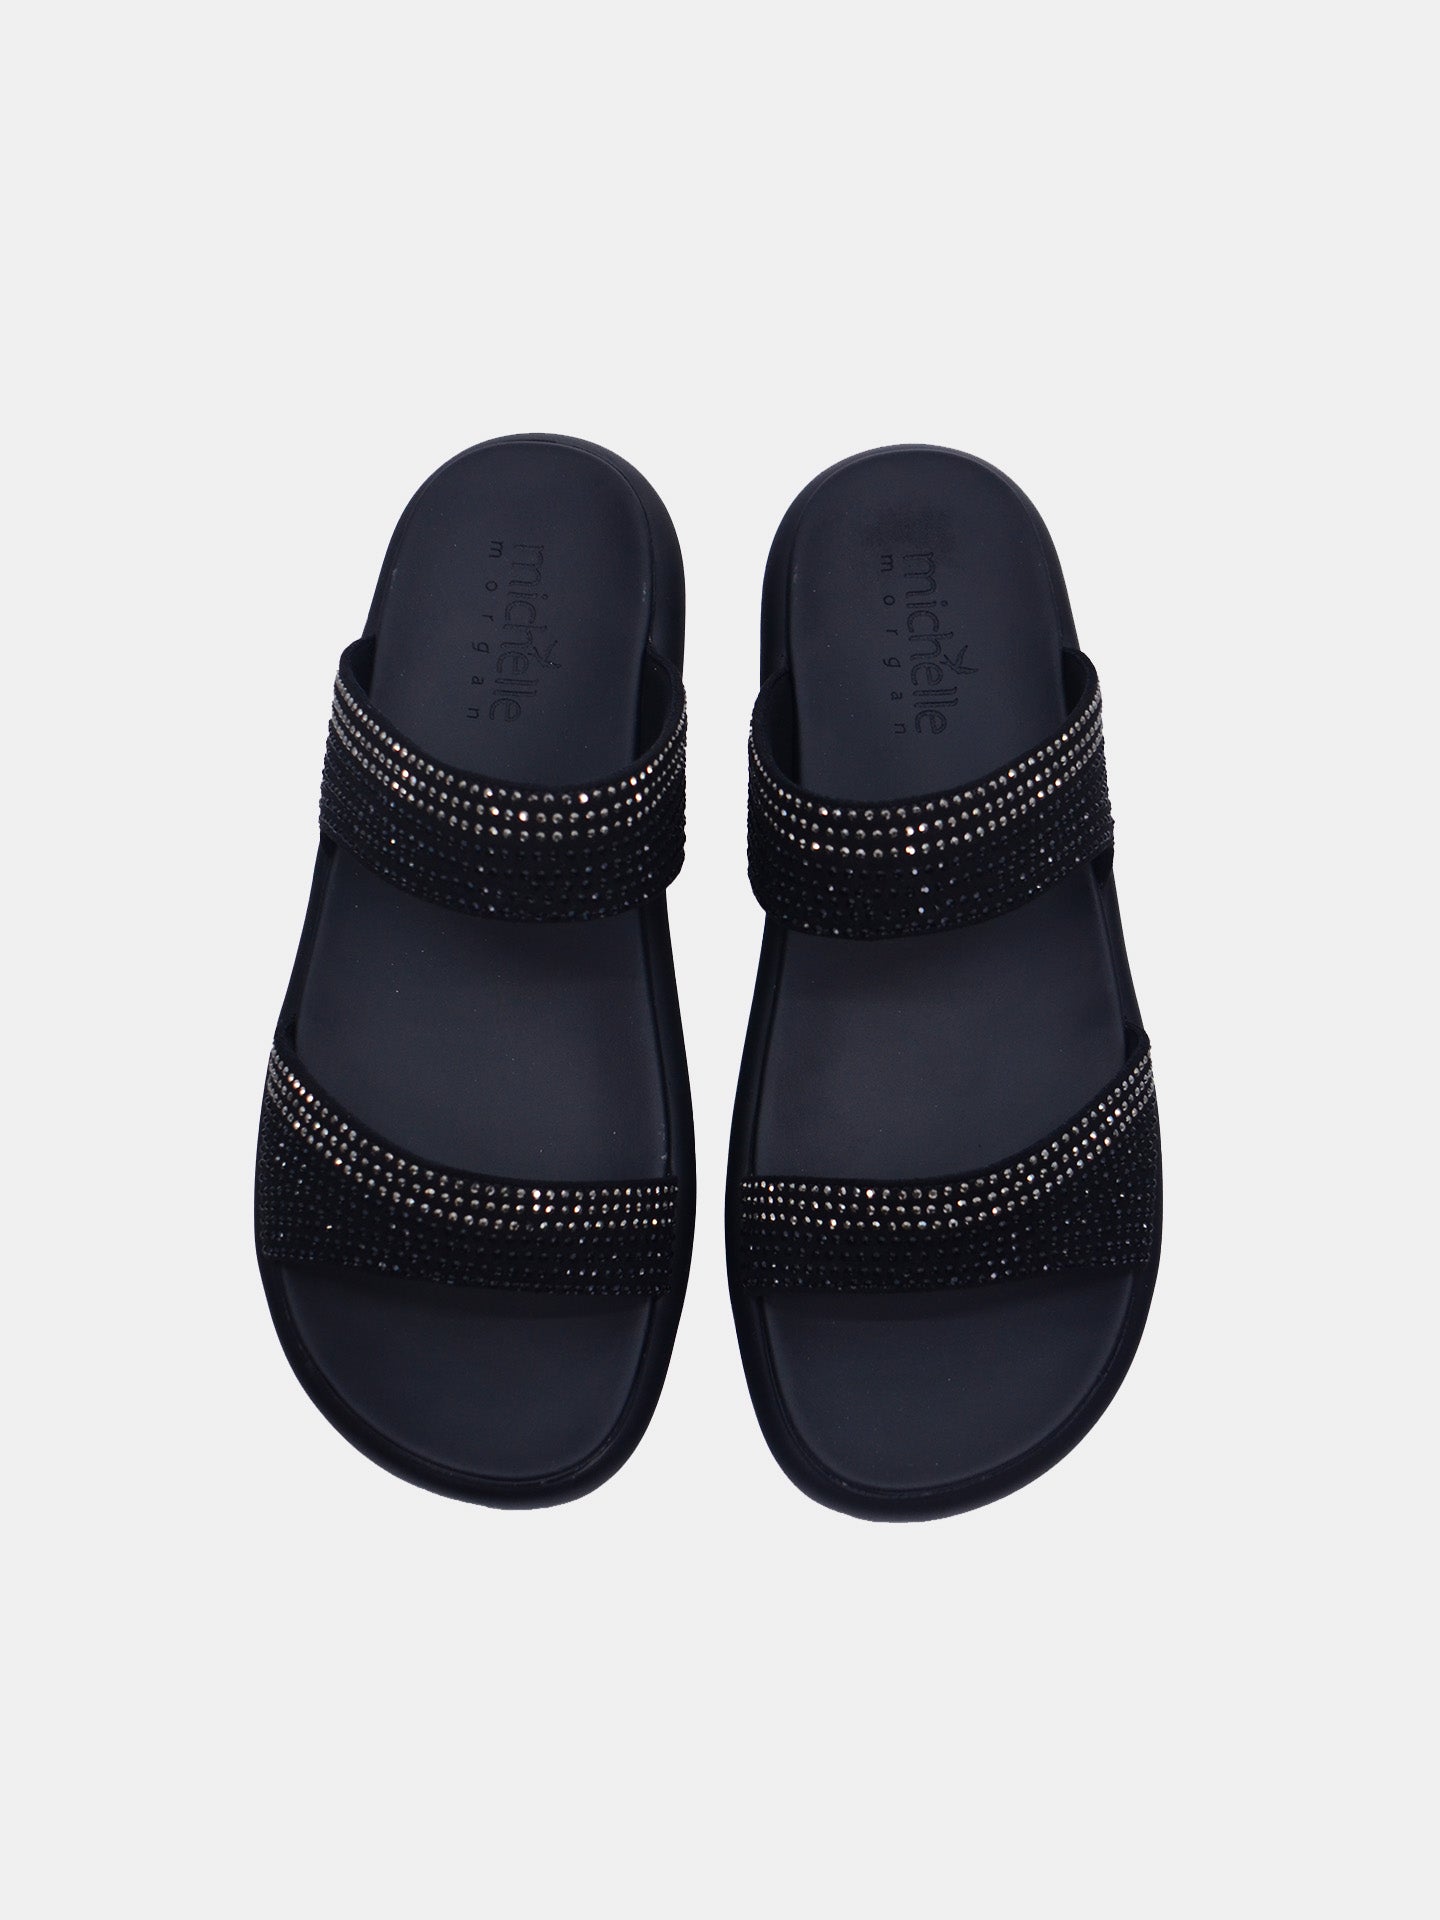 Michelle Morgan 114RC71I Women's Flat Sandals #color_Black